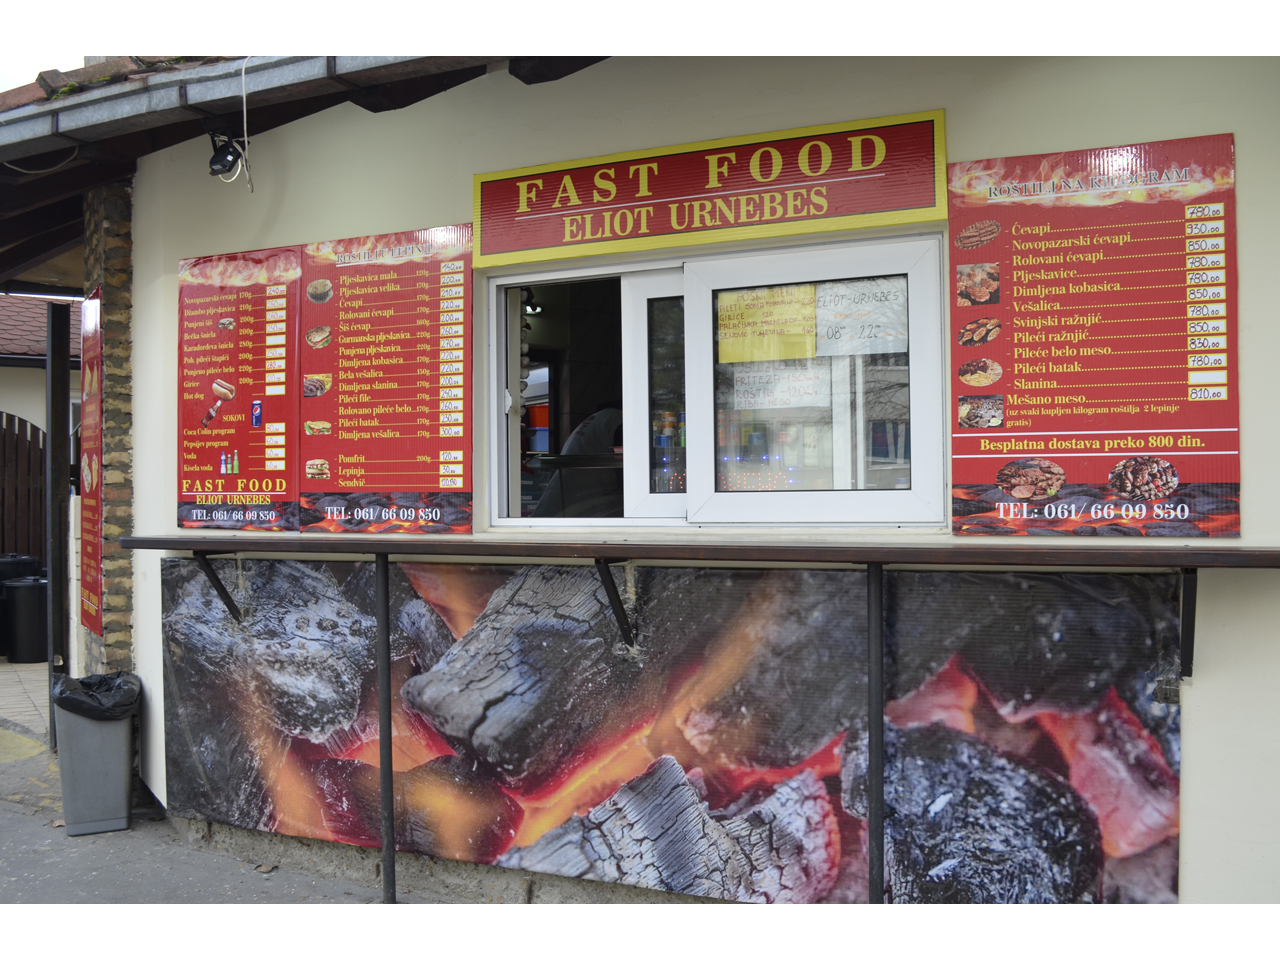 FAST FOOD ELIOT URNEBES Fast food Beograd - Slika 3